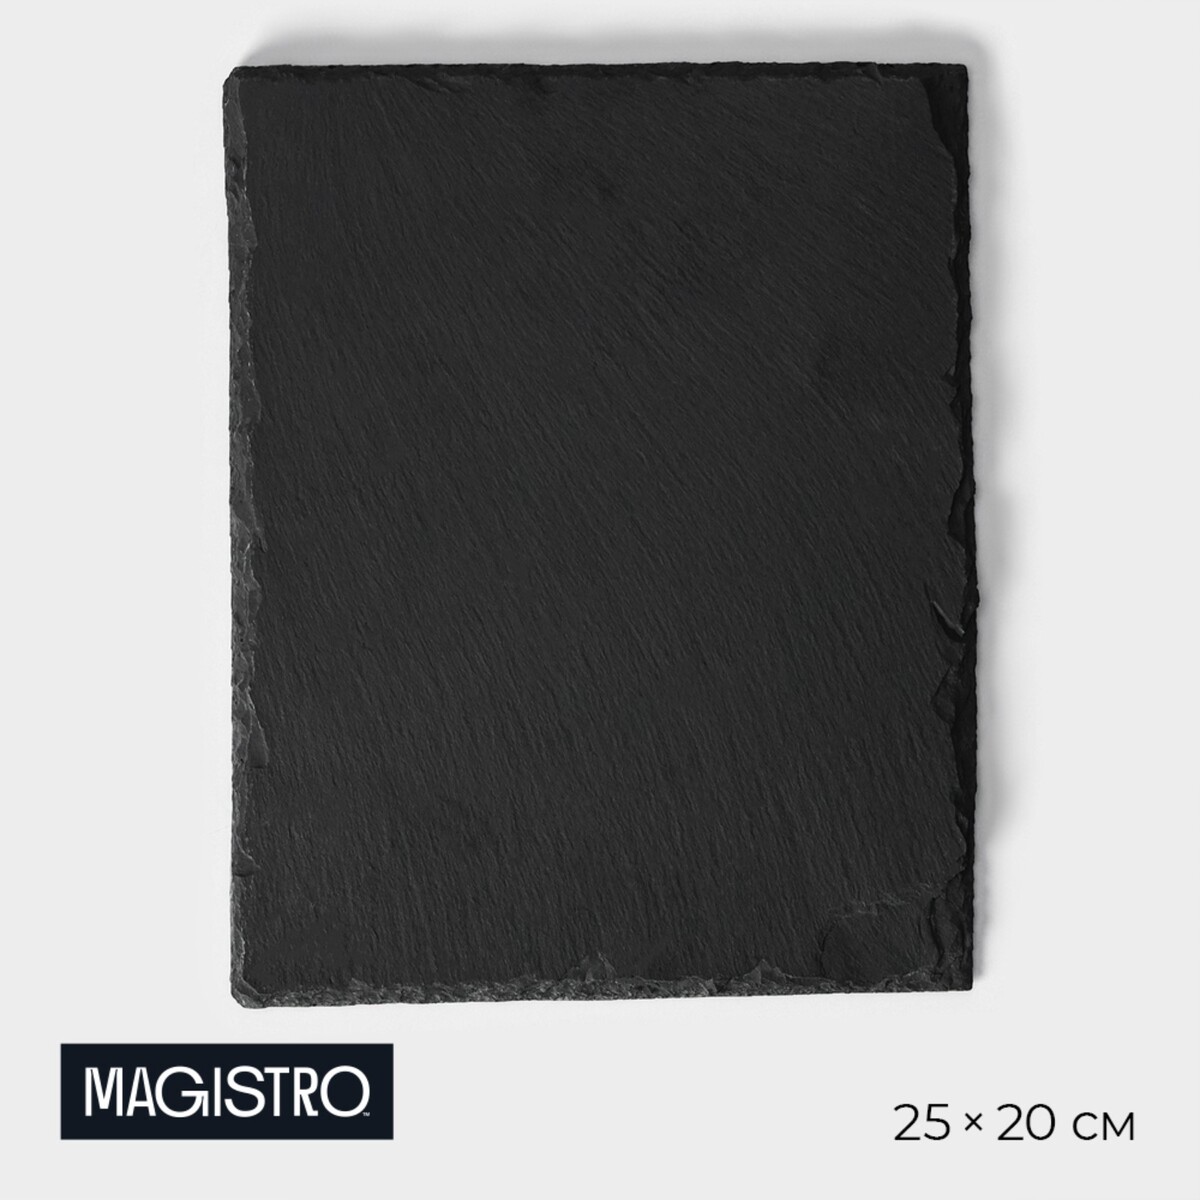 Доска для подачи из сланца magistro valley, 25×20 см доска для подачи из сланца magistro valley 20×40 см